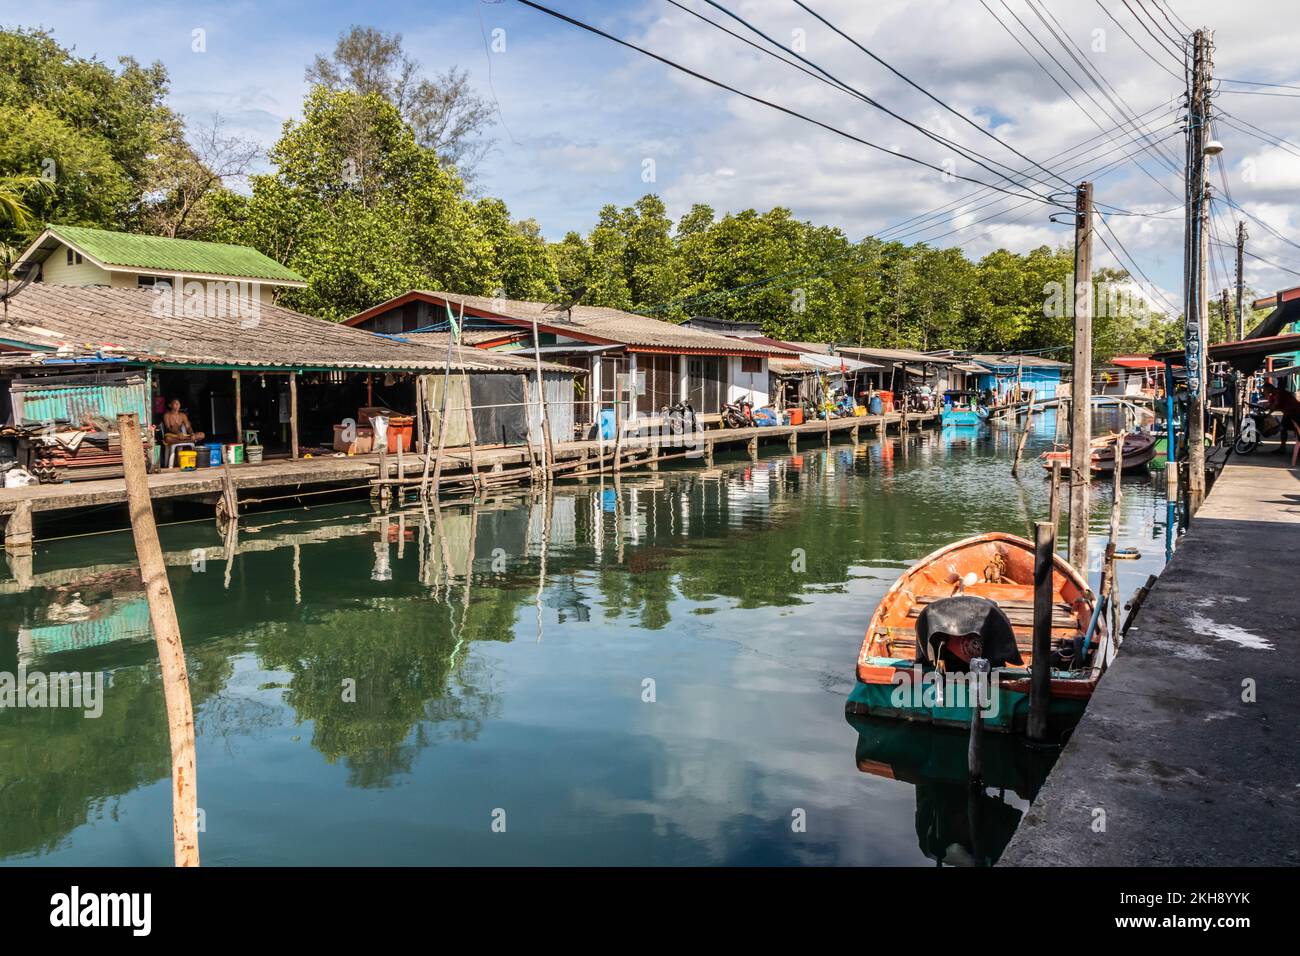 Village de pêcheurs thaïlandais typique, Trat, Thaïlande Banque D'Images